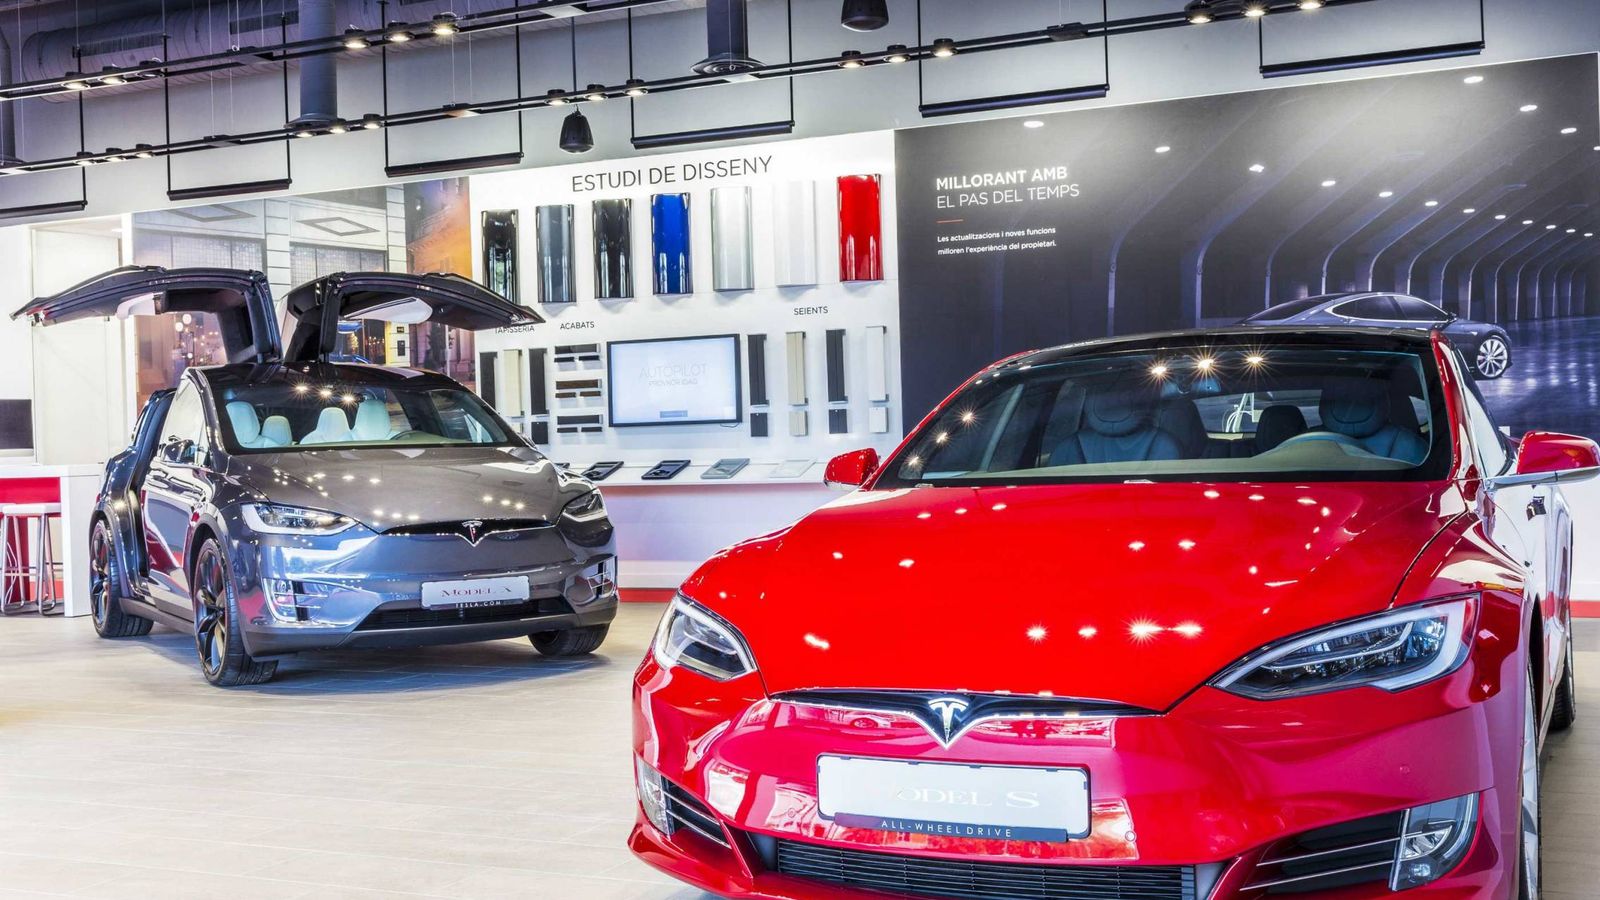 Foto: Instalaciones de la tienda Tesla en L'Hospitalet, donde se ha mostrado estos días el nuevo Model 3.